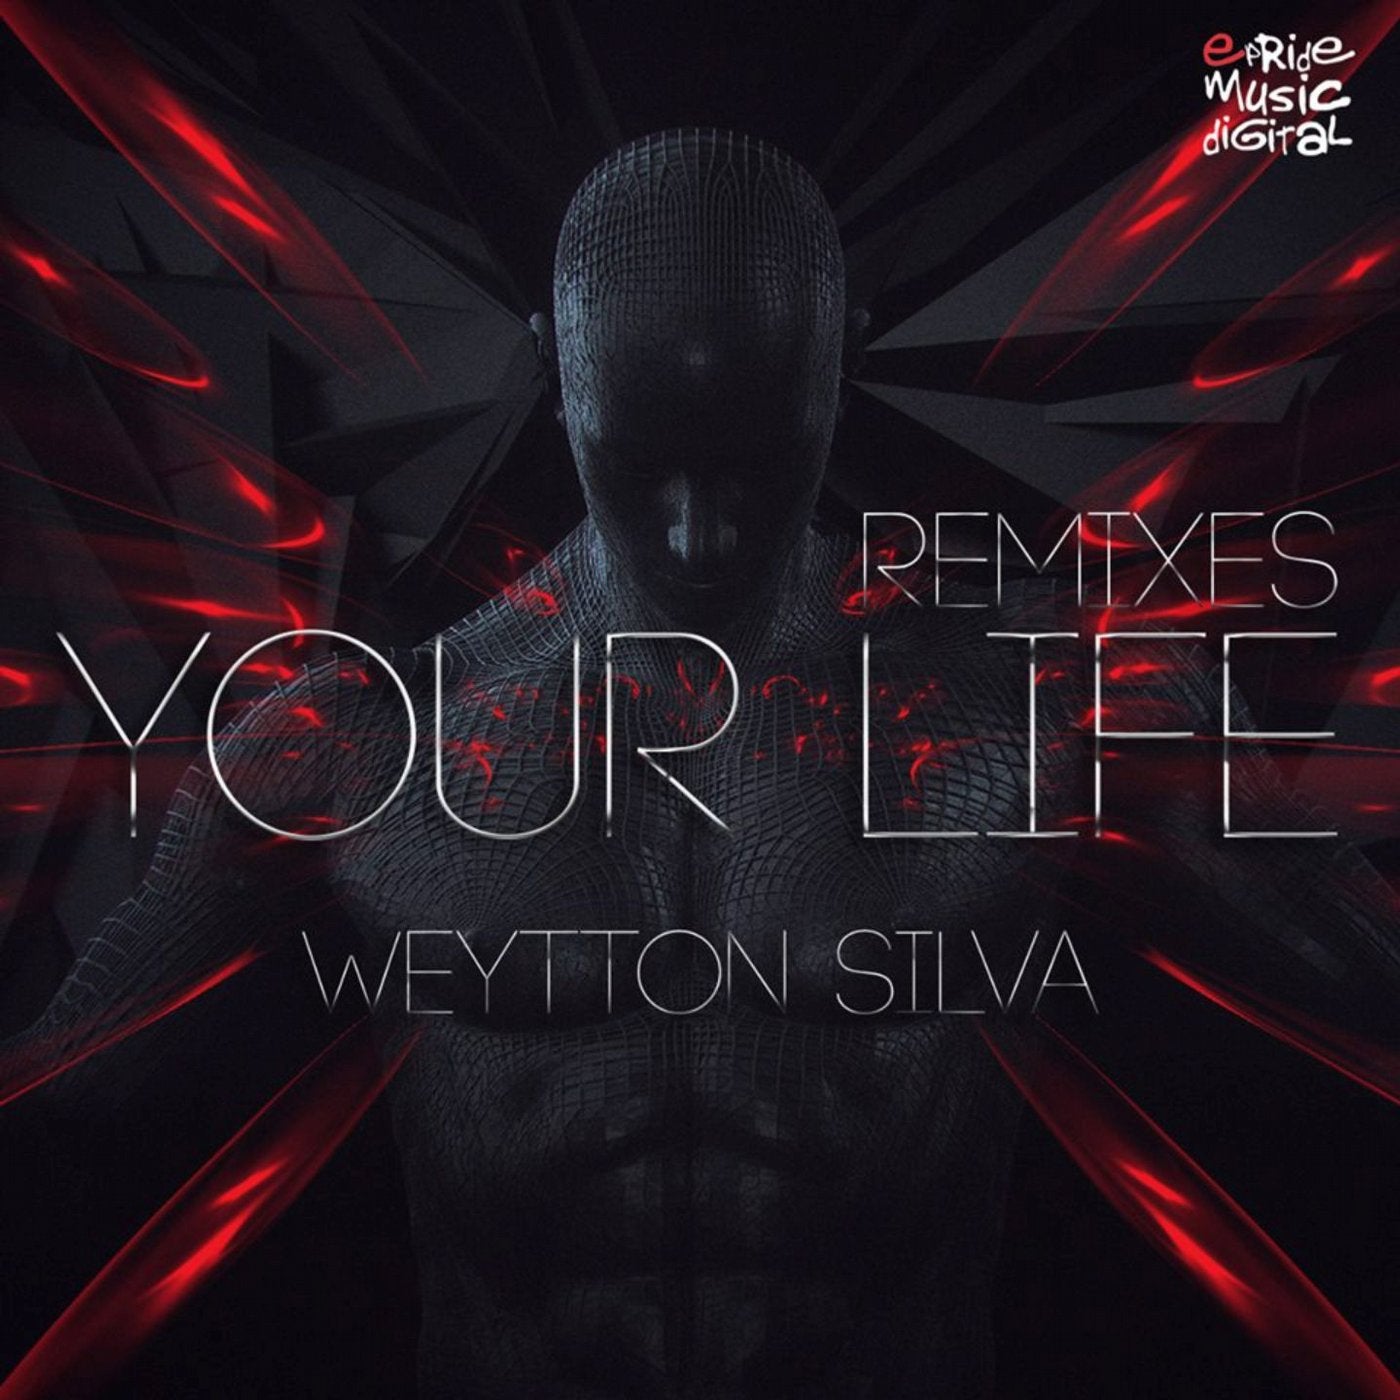 Your Life (Remixes)